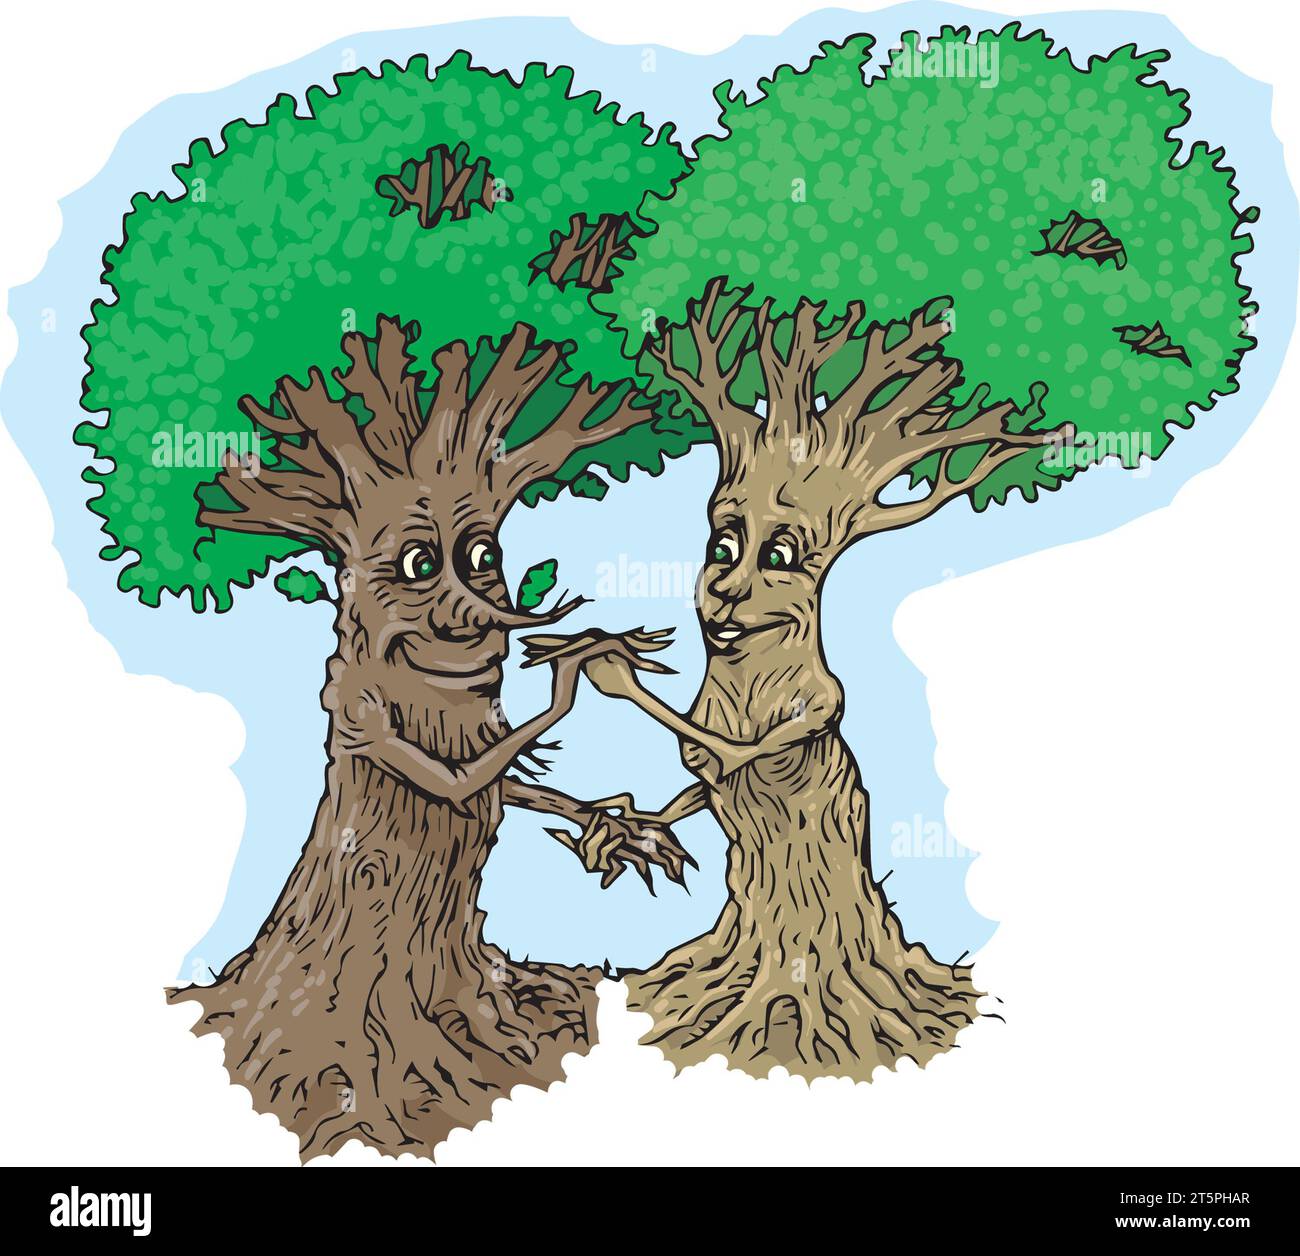 L'amour d'Art Philemon & Baucis était si fort qu'à la mort Zeus a accordé leur souhait et les a transformés en arbres au Japon deux représentants de pins. amour éternel Banque D'Images